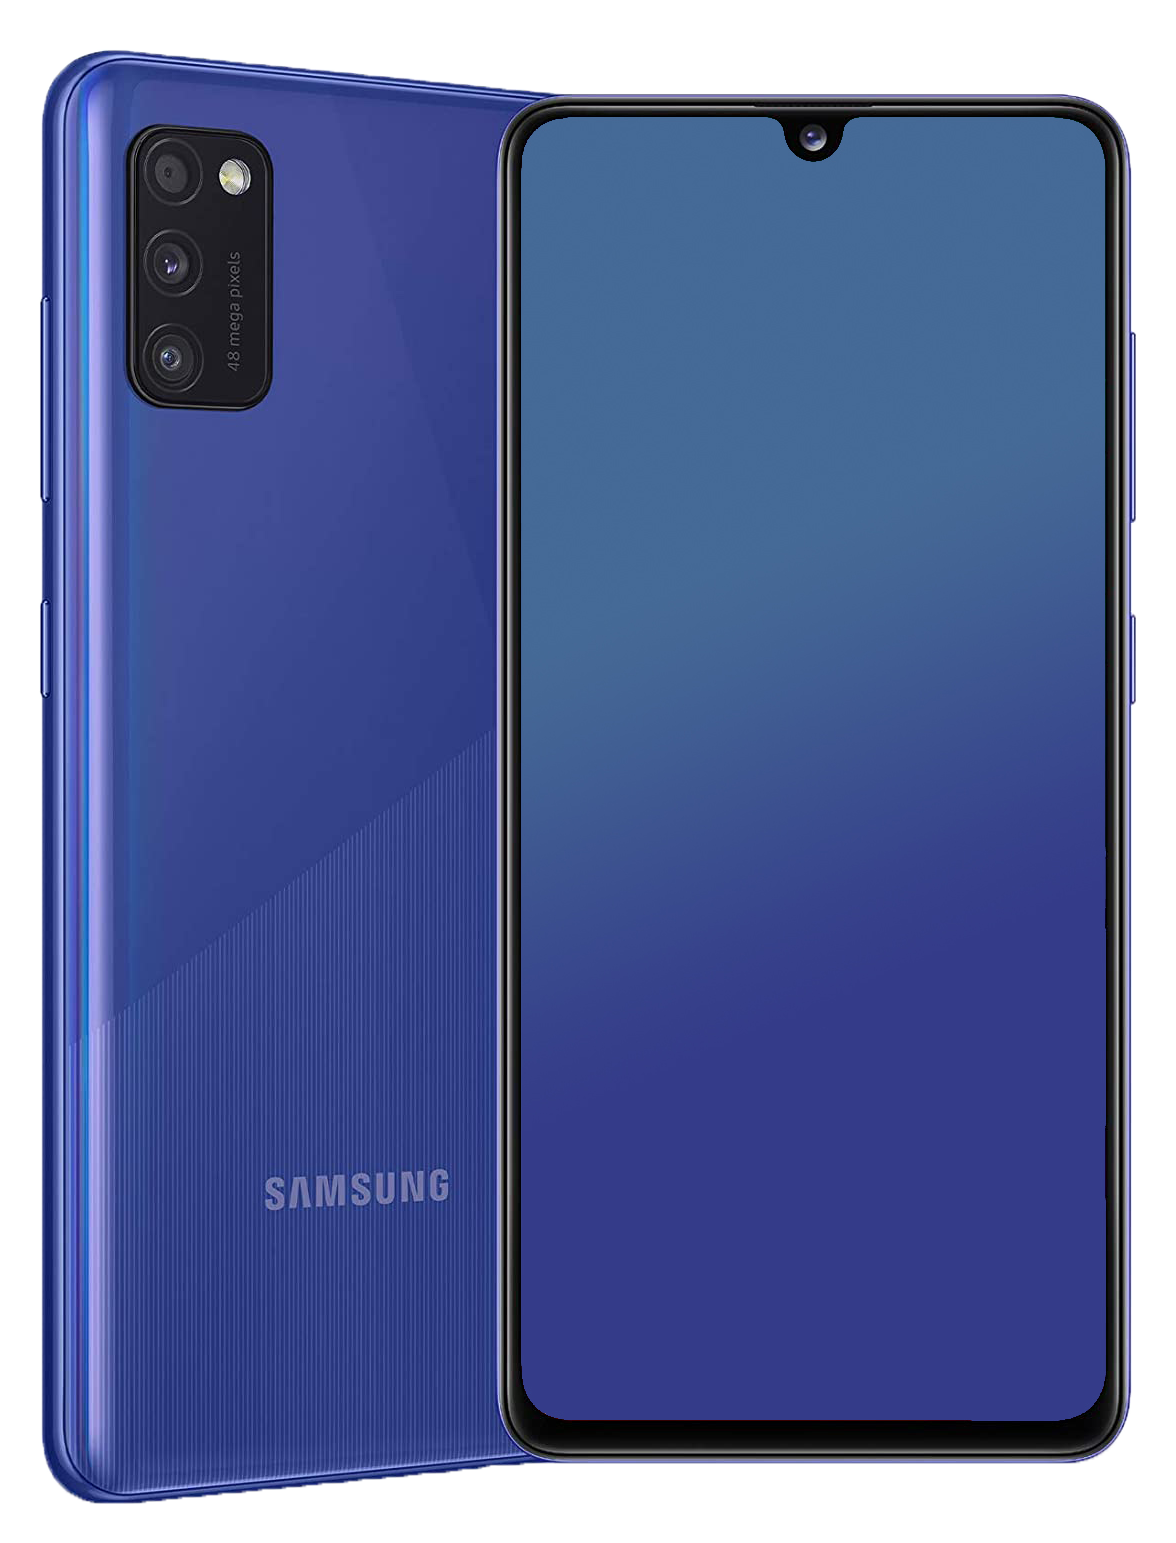 Samsung Galaxy A41 Dual-SIM blau - Ohne Vertrag